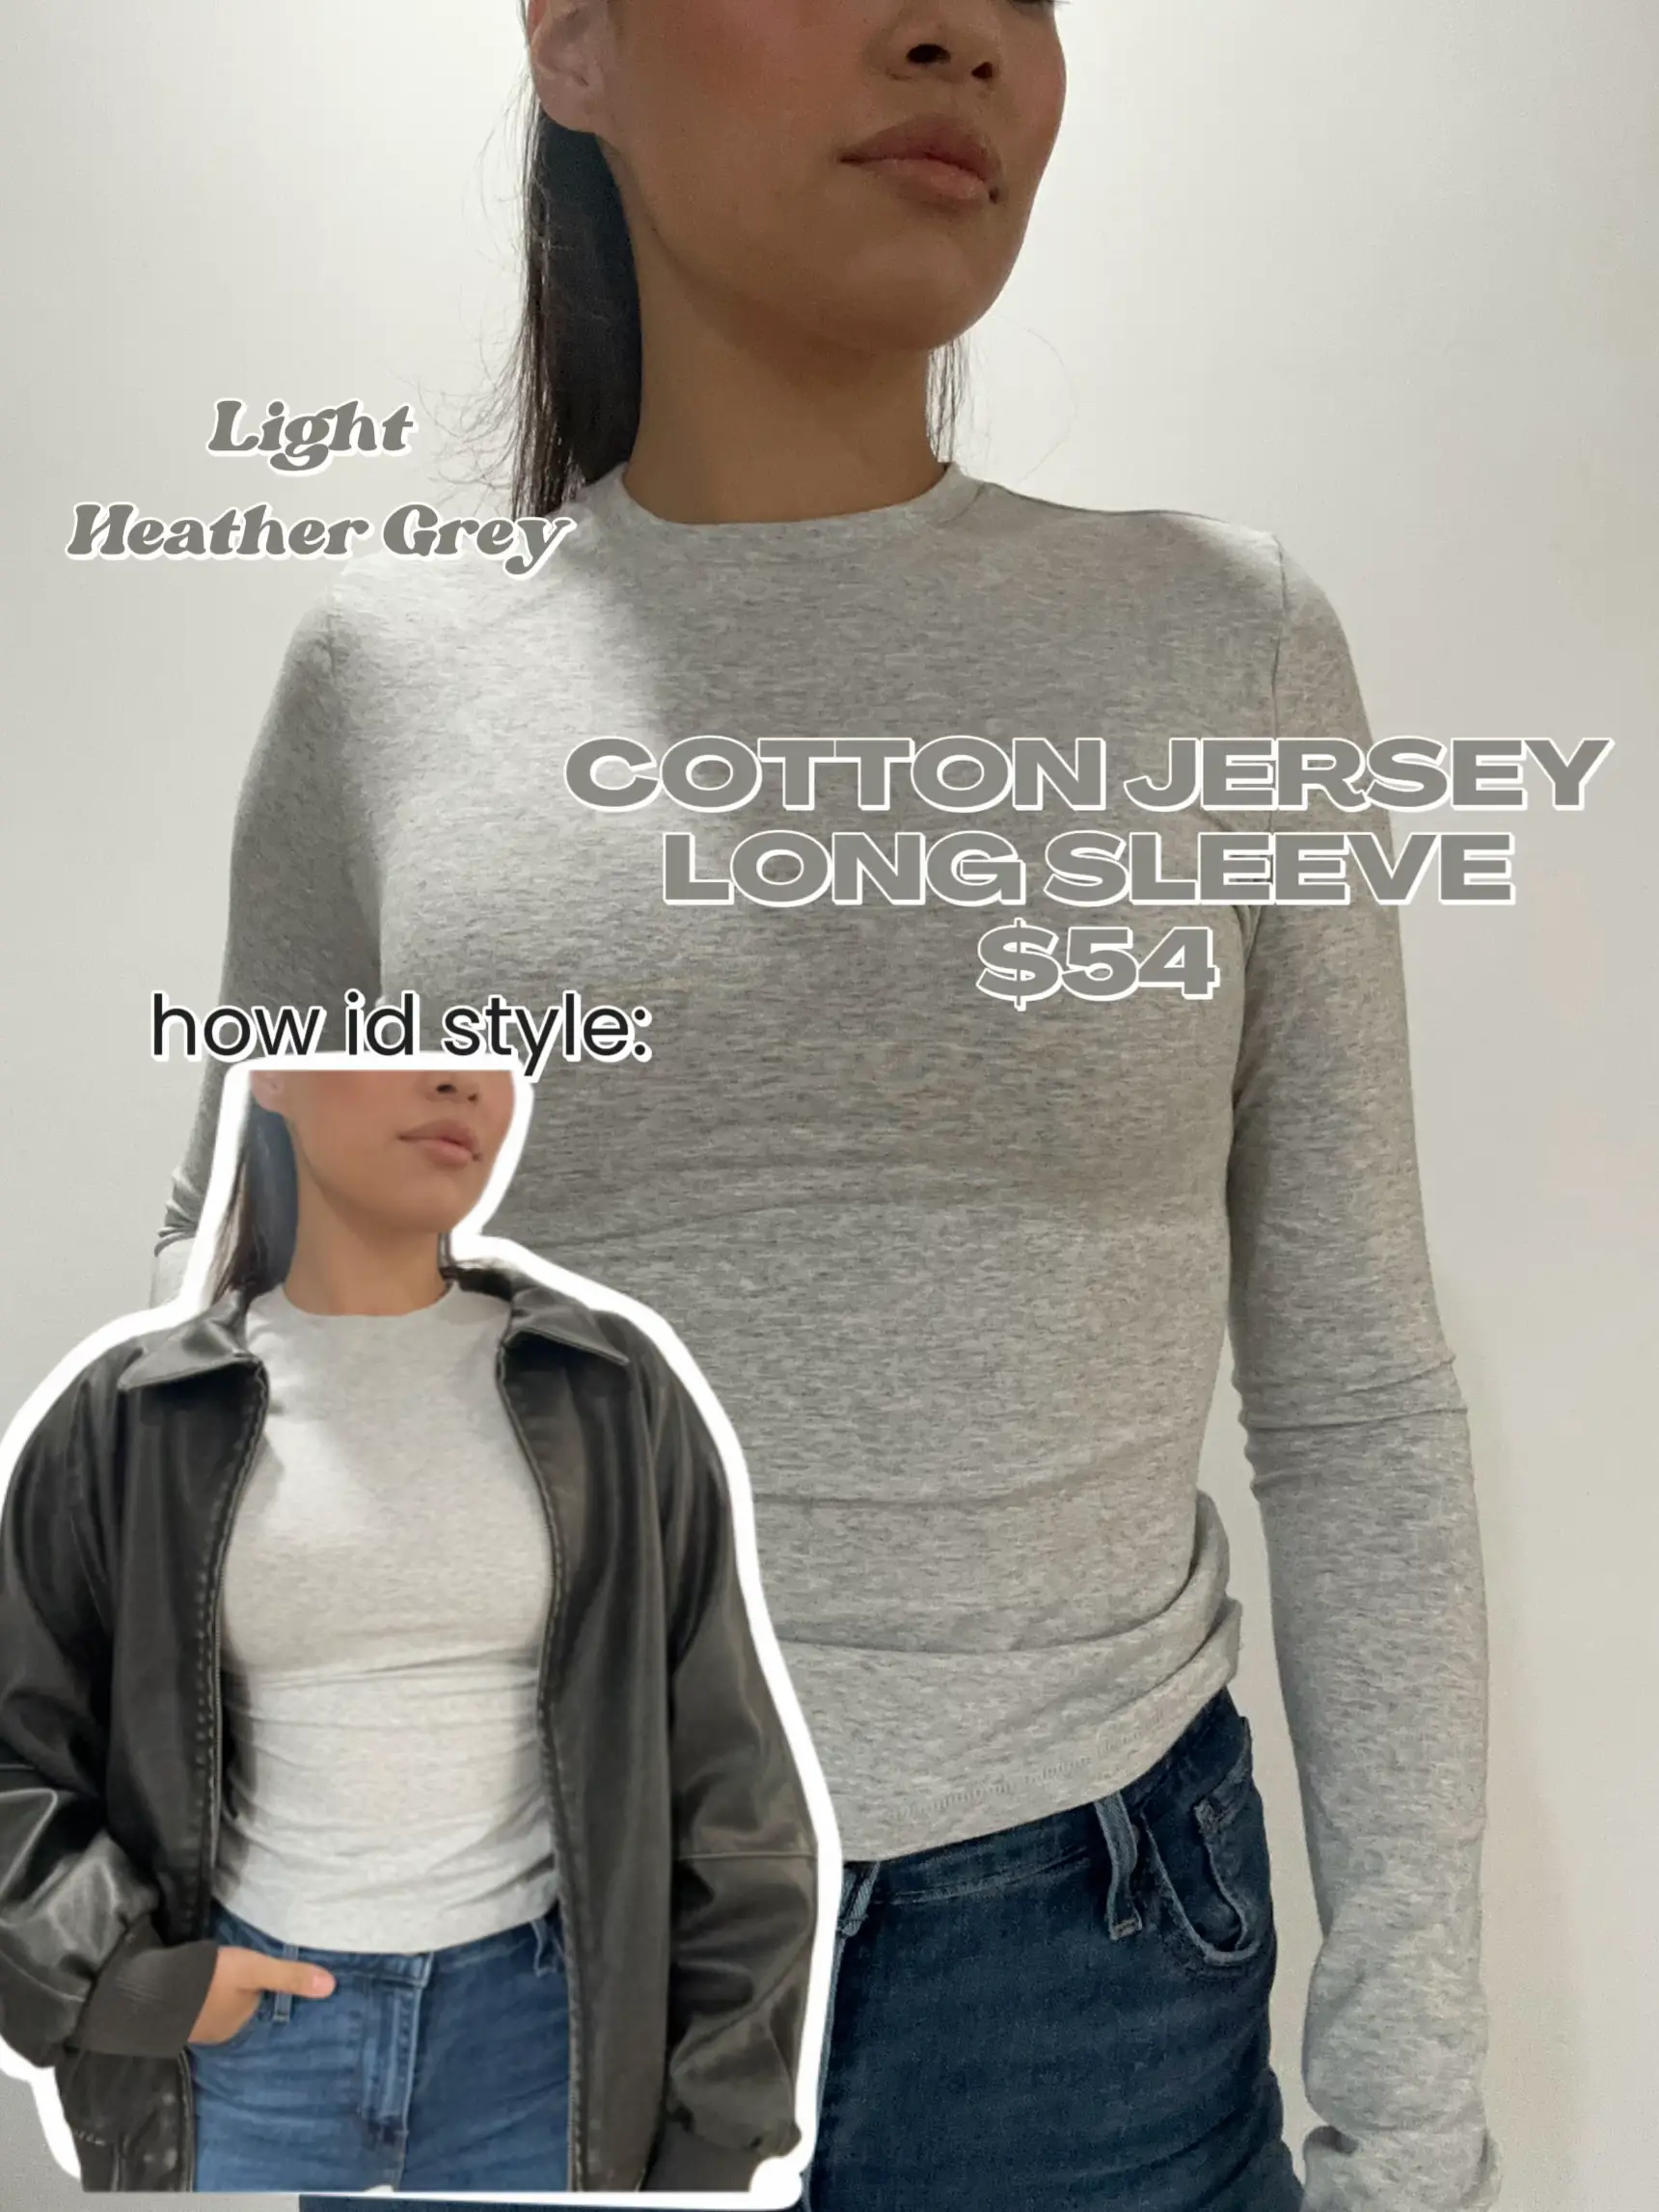 Skims Stretch Cotton Jersey Scoop Neck Bralette In Light Heather